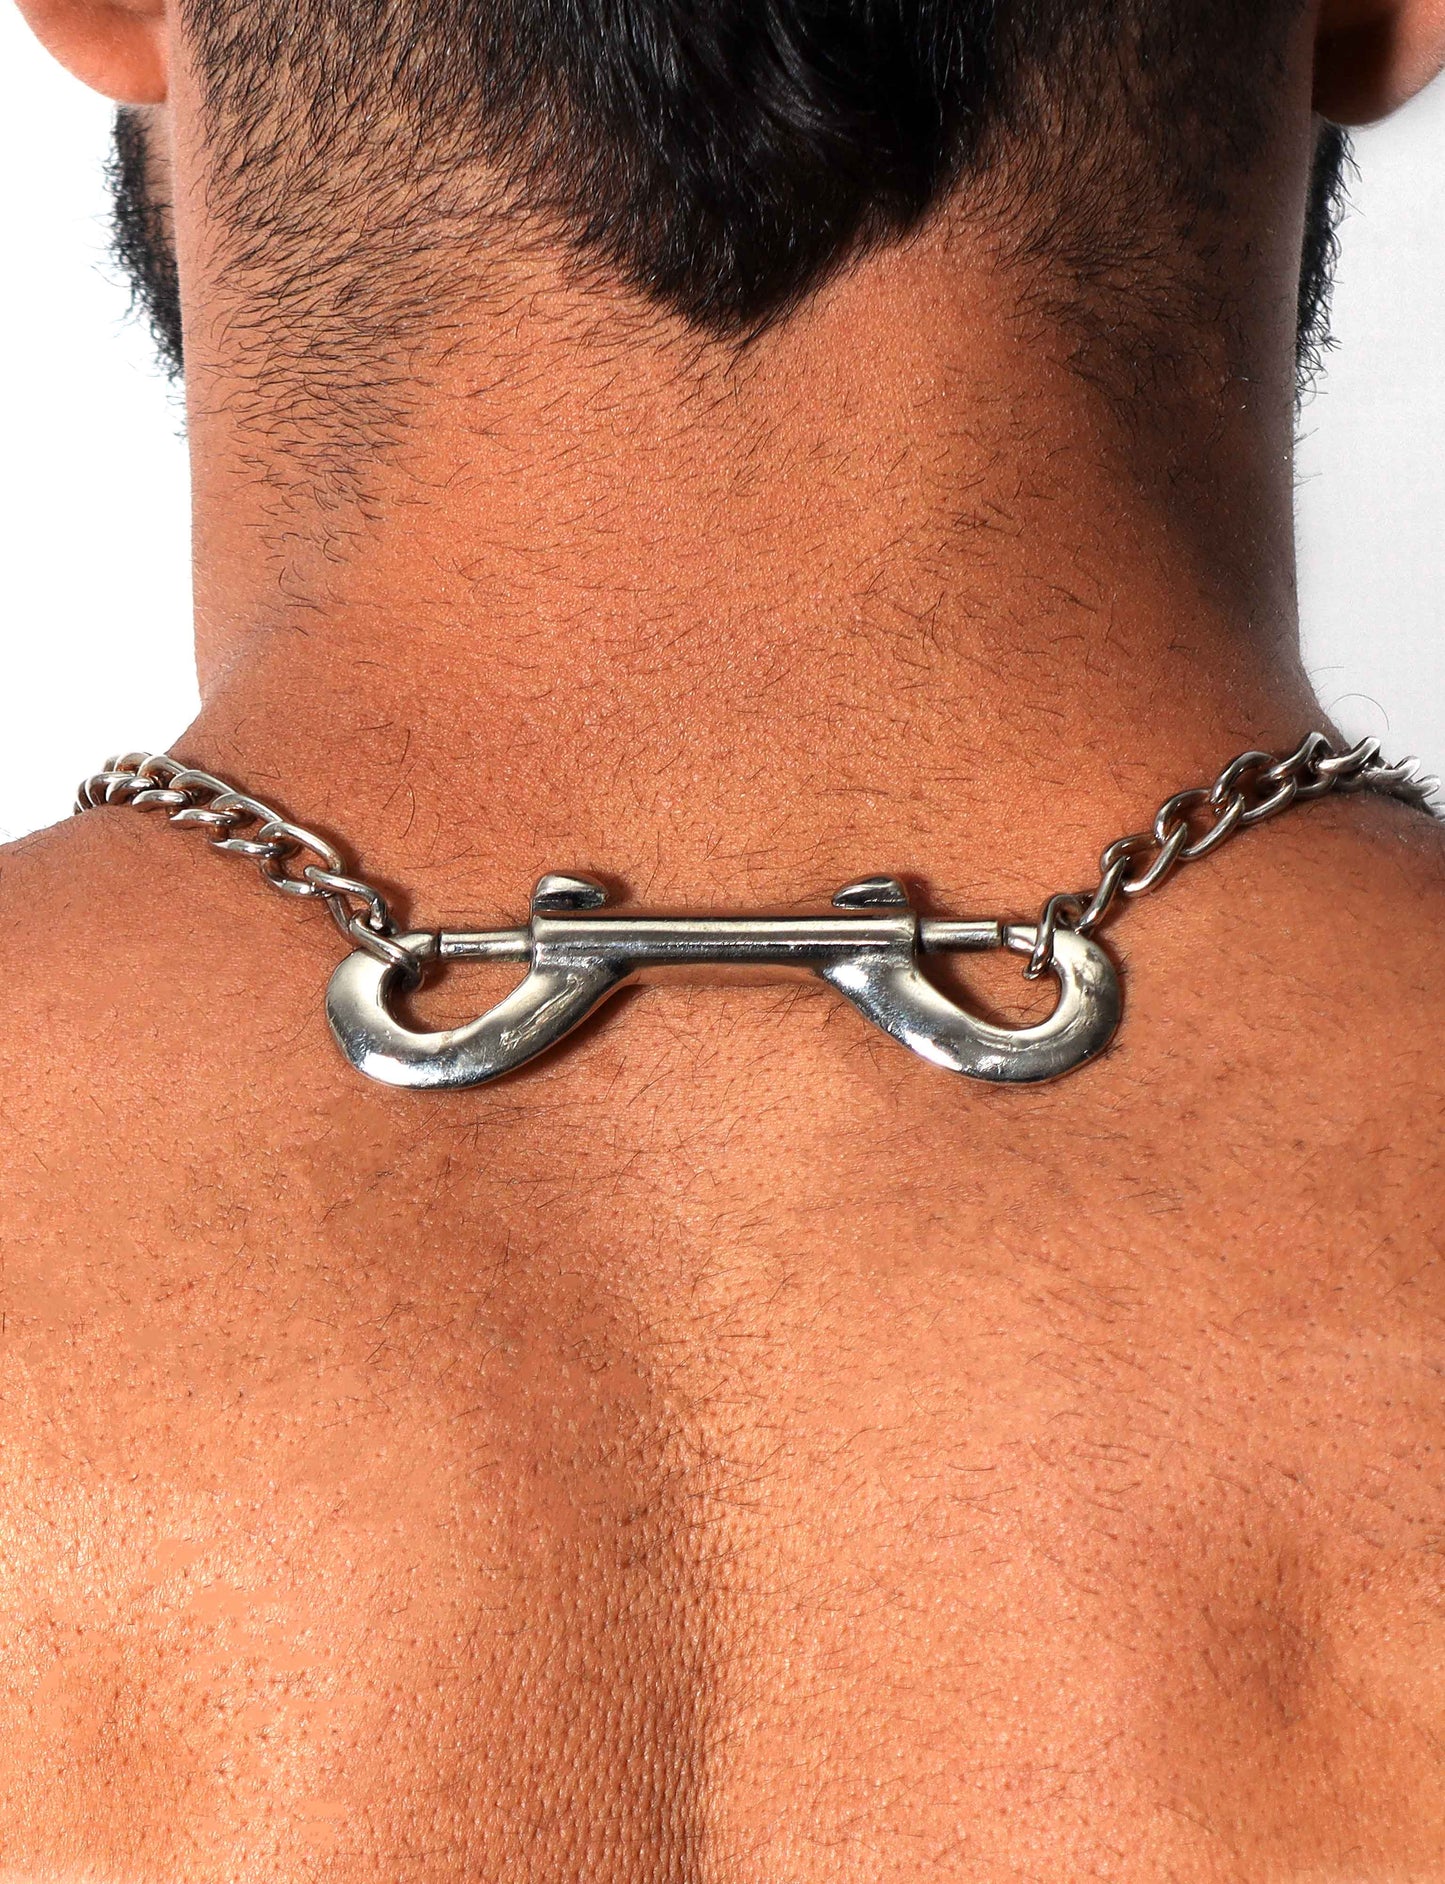 Horseshoe Hook Necklace